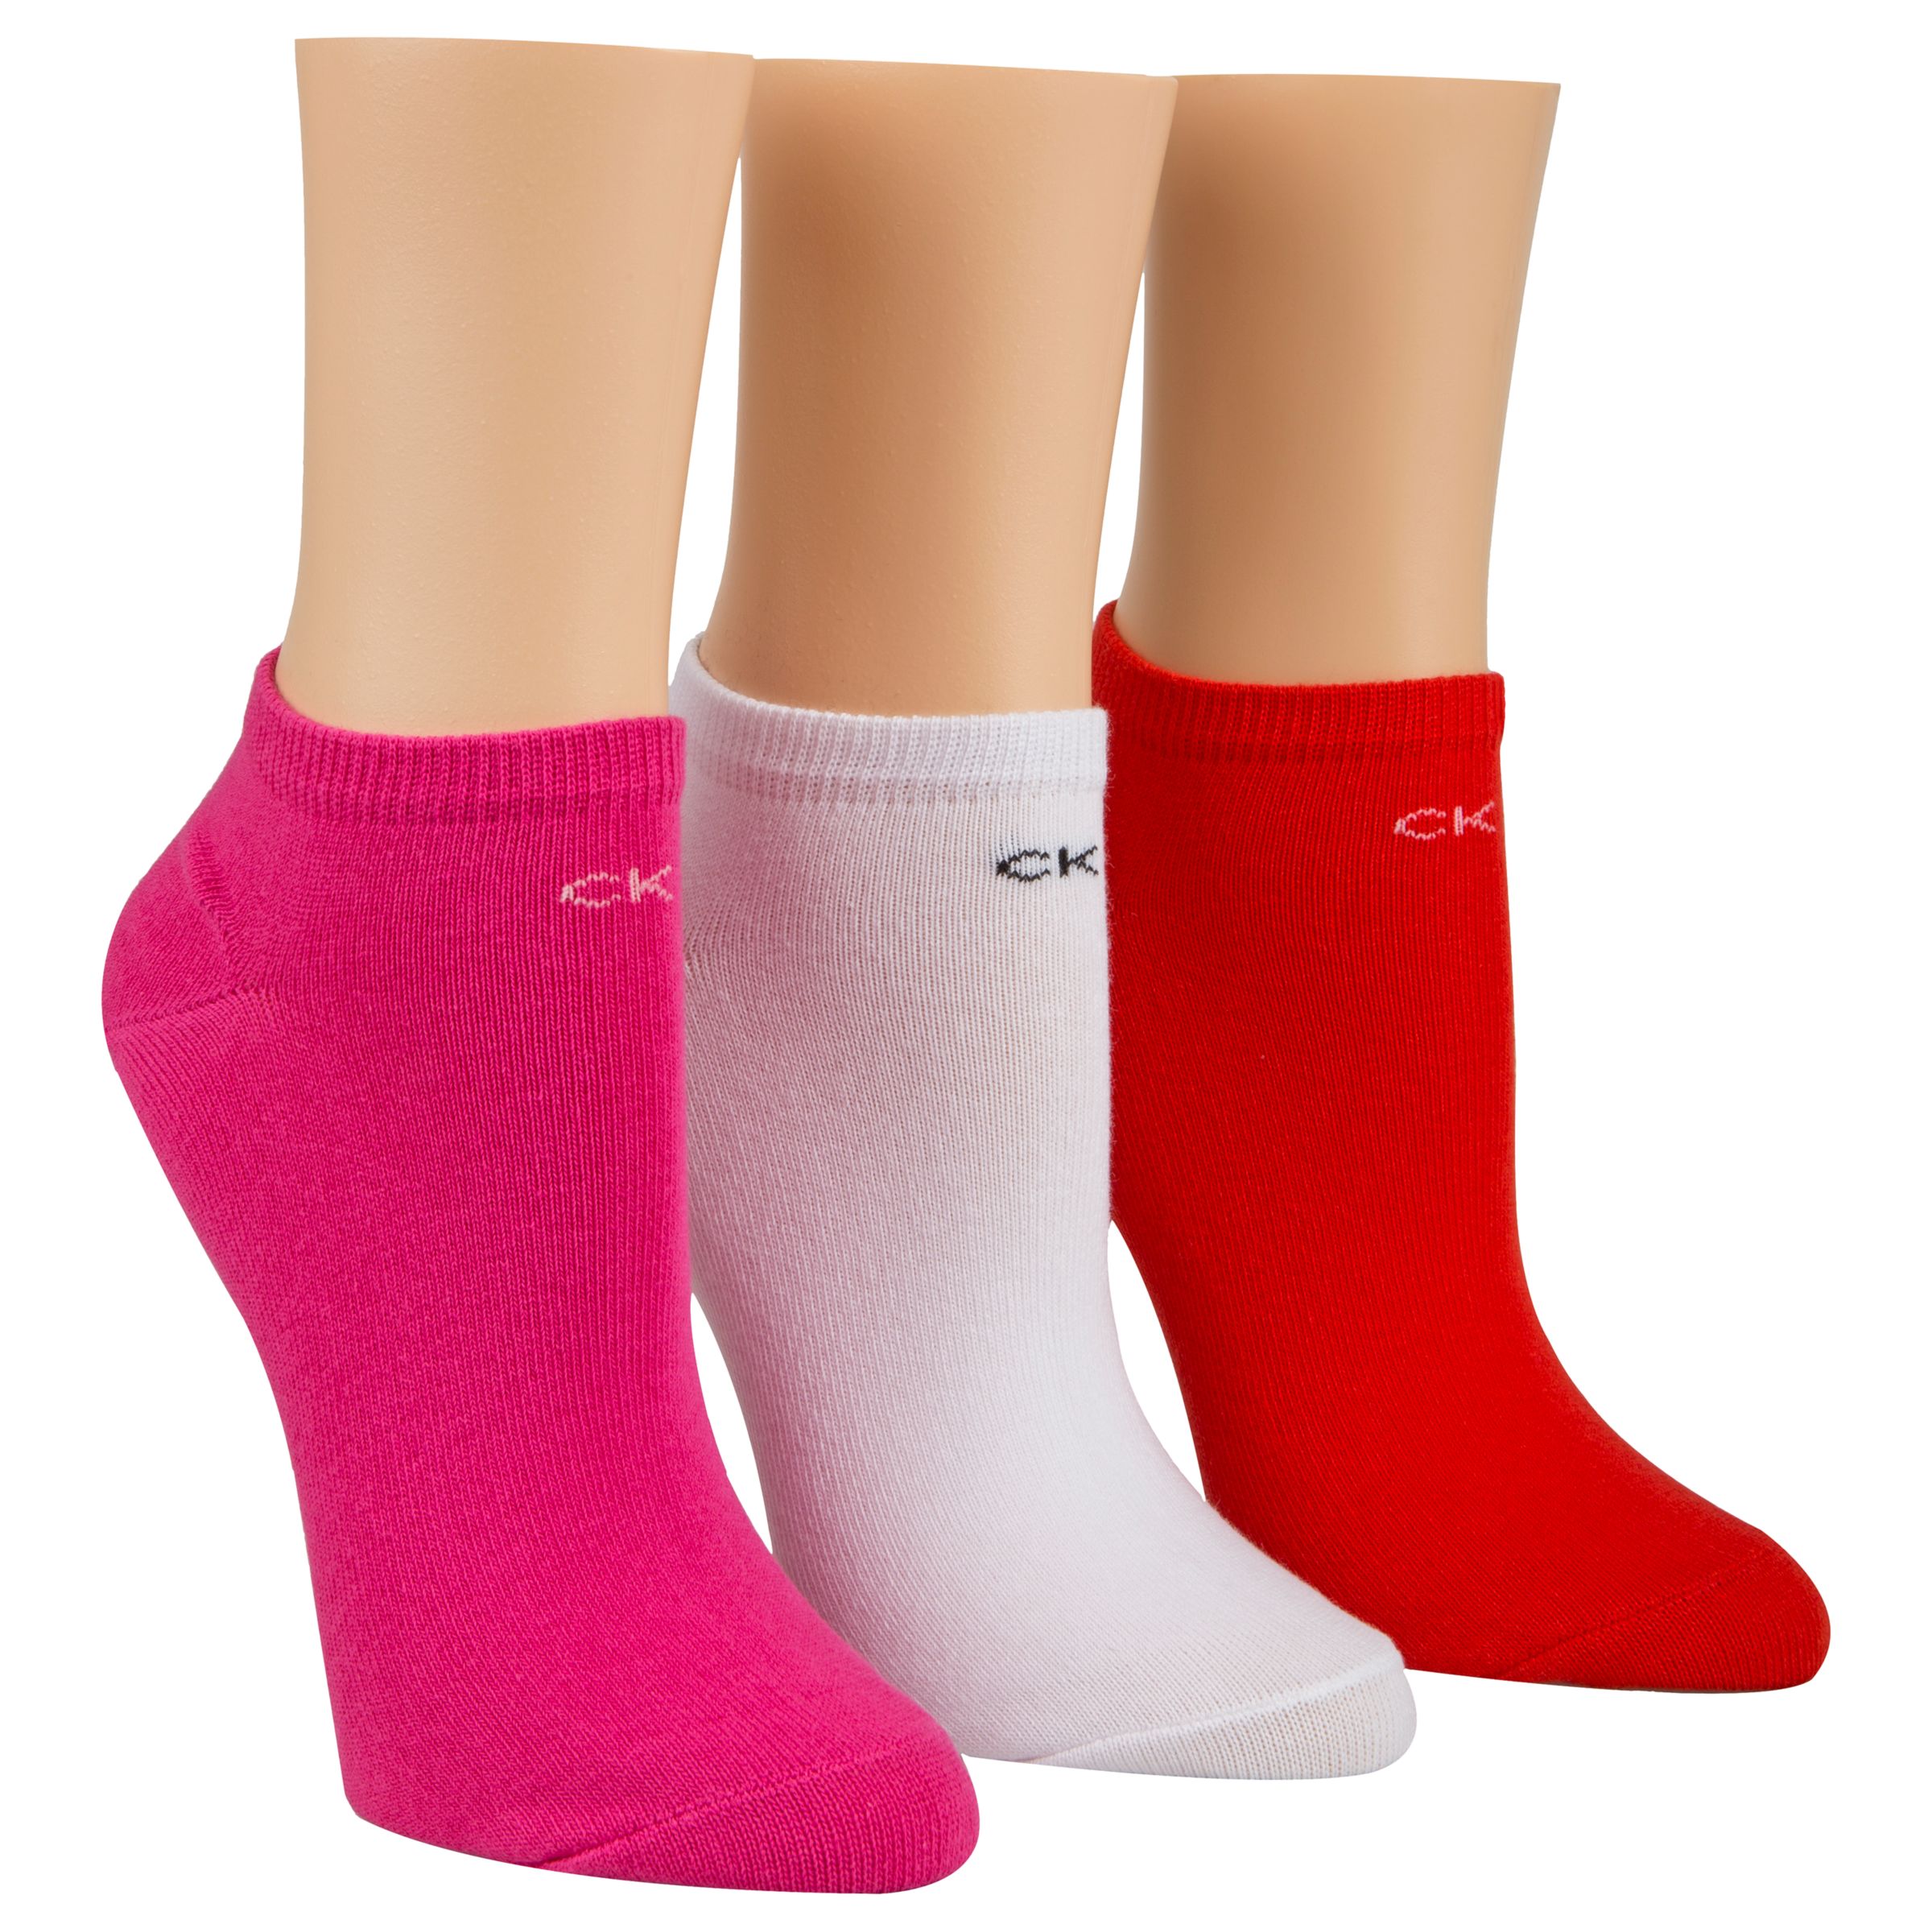 Calvin Klein Logo Liner Socks, Pack of 3